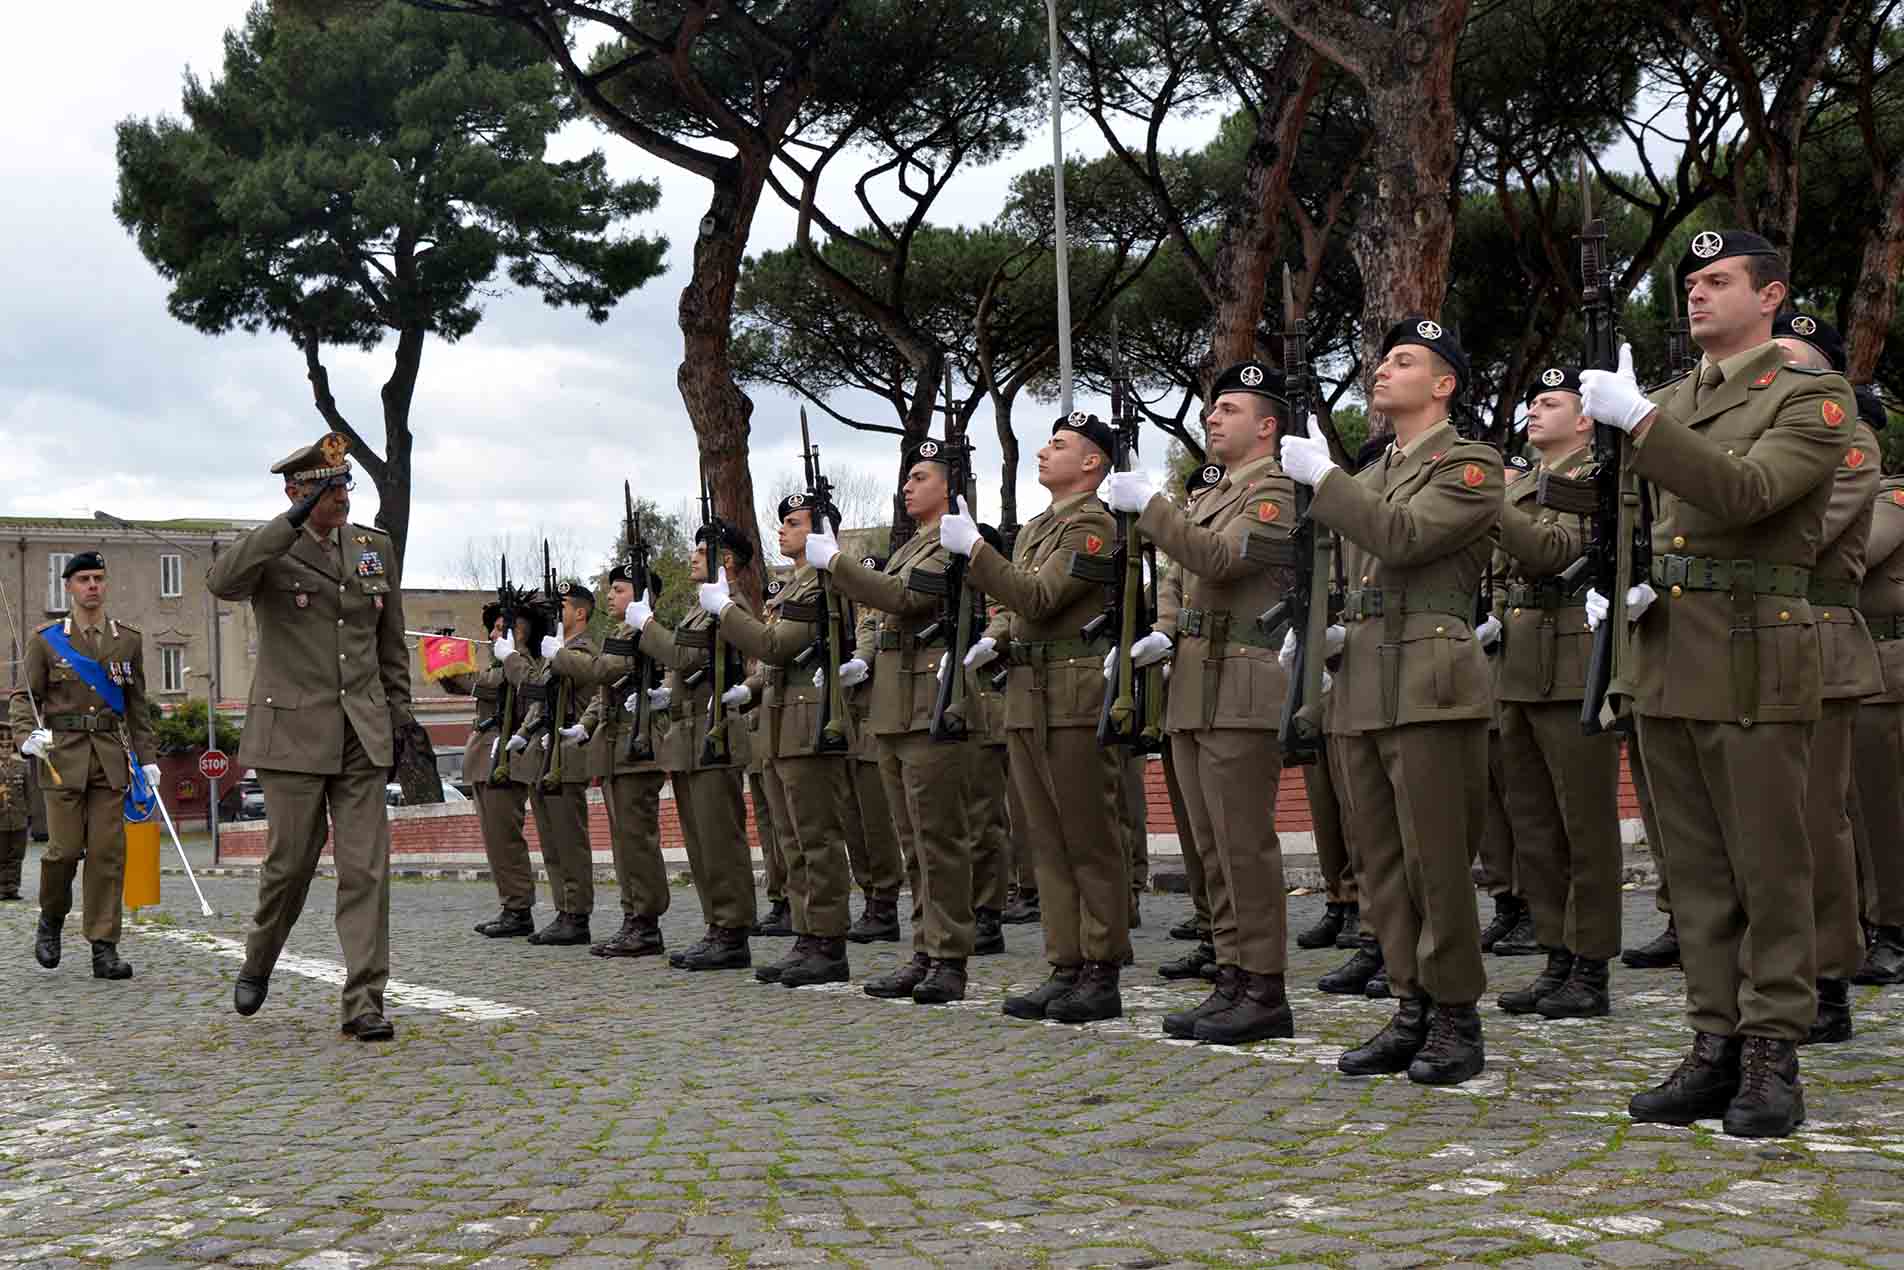 1 Gen De Leverano riceve gli onori militari.jpg